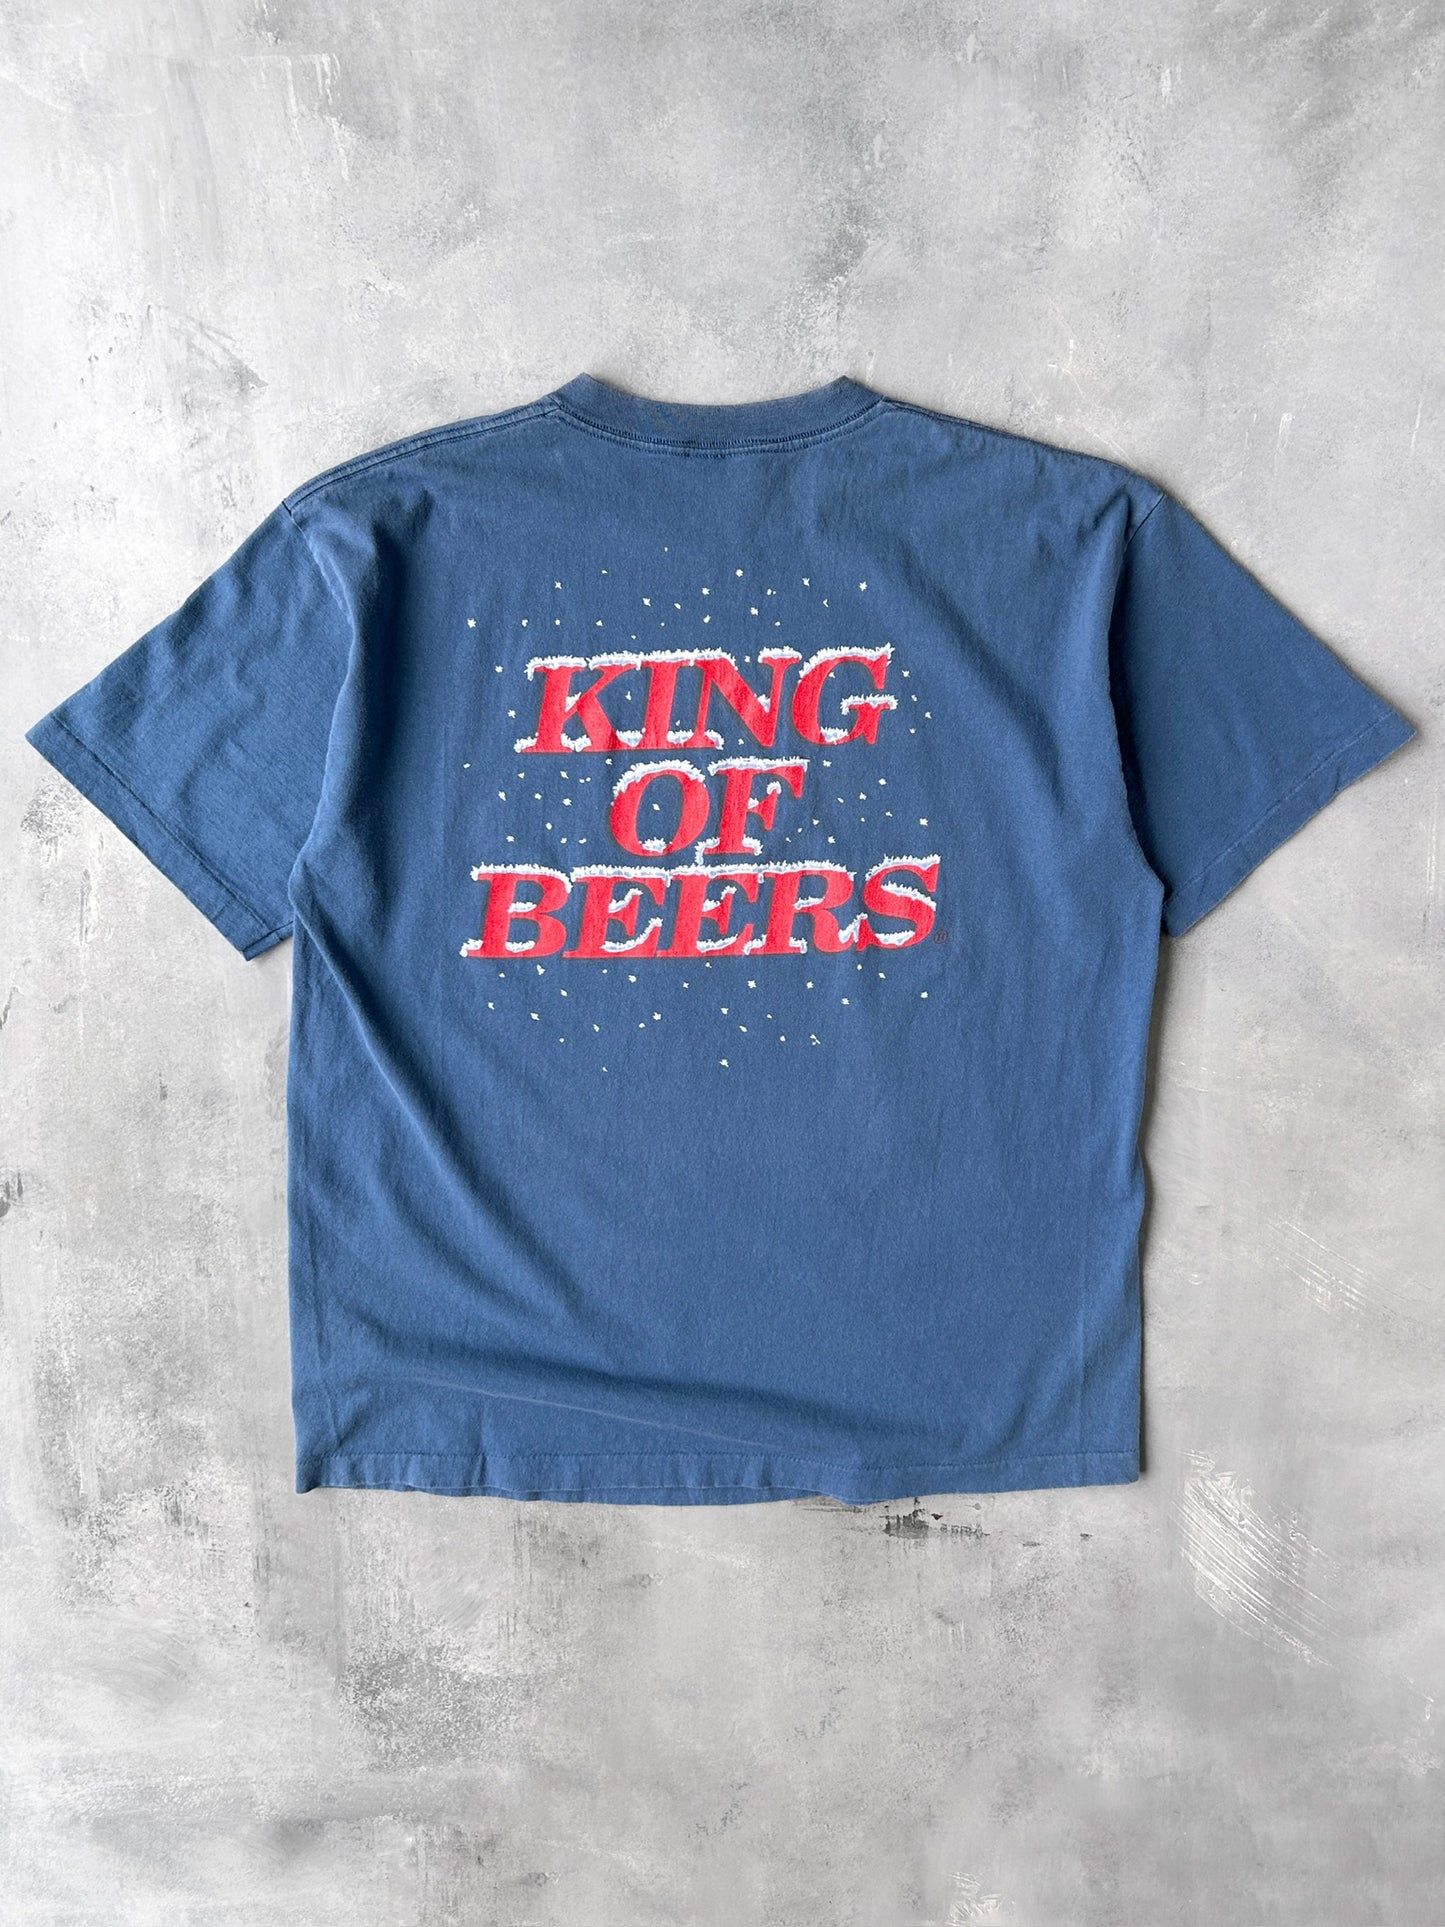 Budweiser Frogs T-Shirt '96 - XL